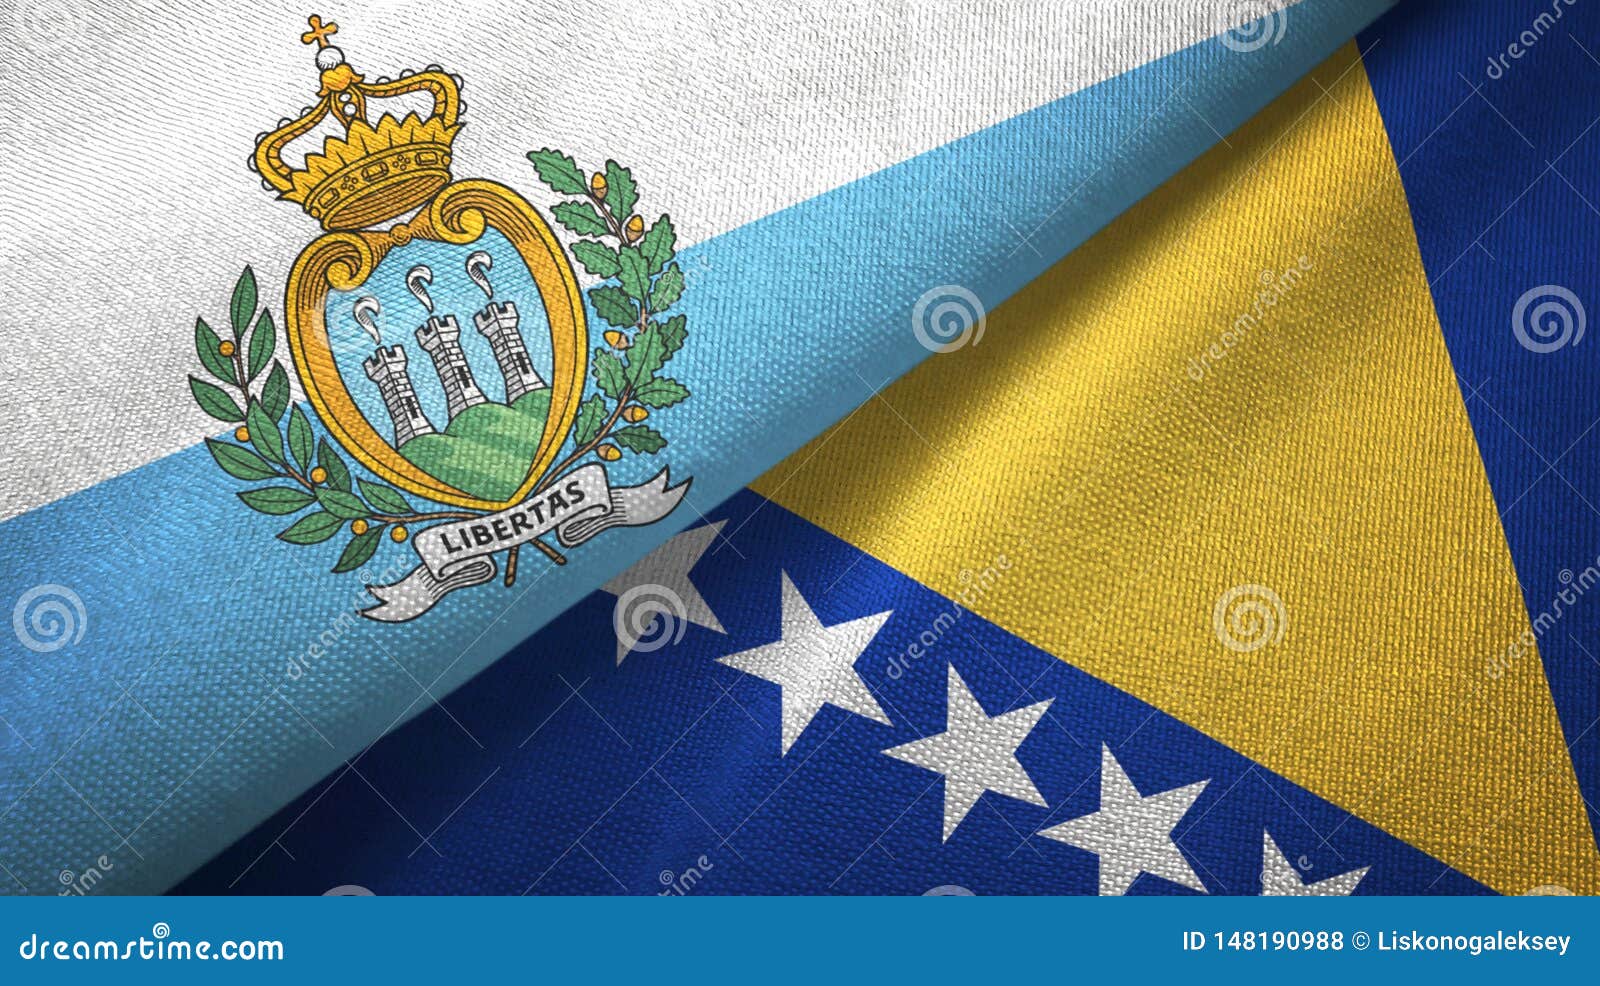 Флаг сан марино. Флаг Сан Марино 1812. Флаг Сан Марино Северной Македонии. Флаг Сан Марино фото.